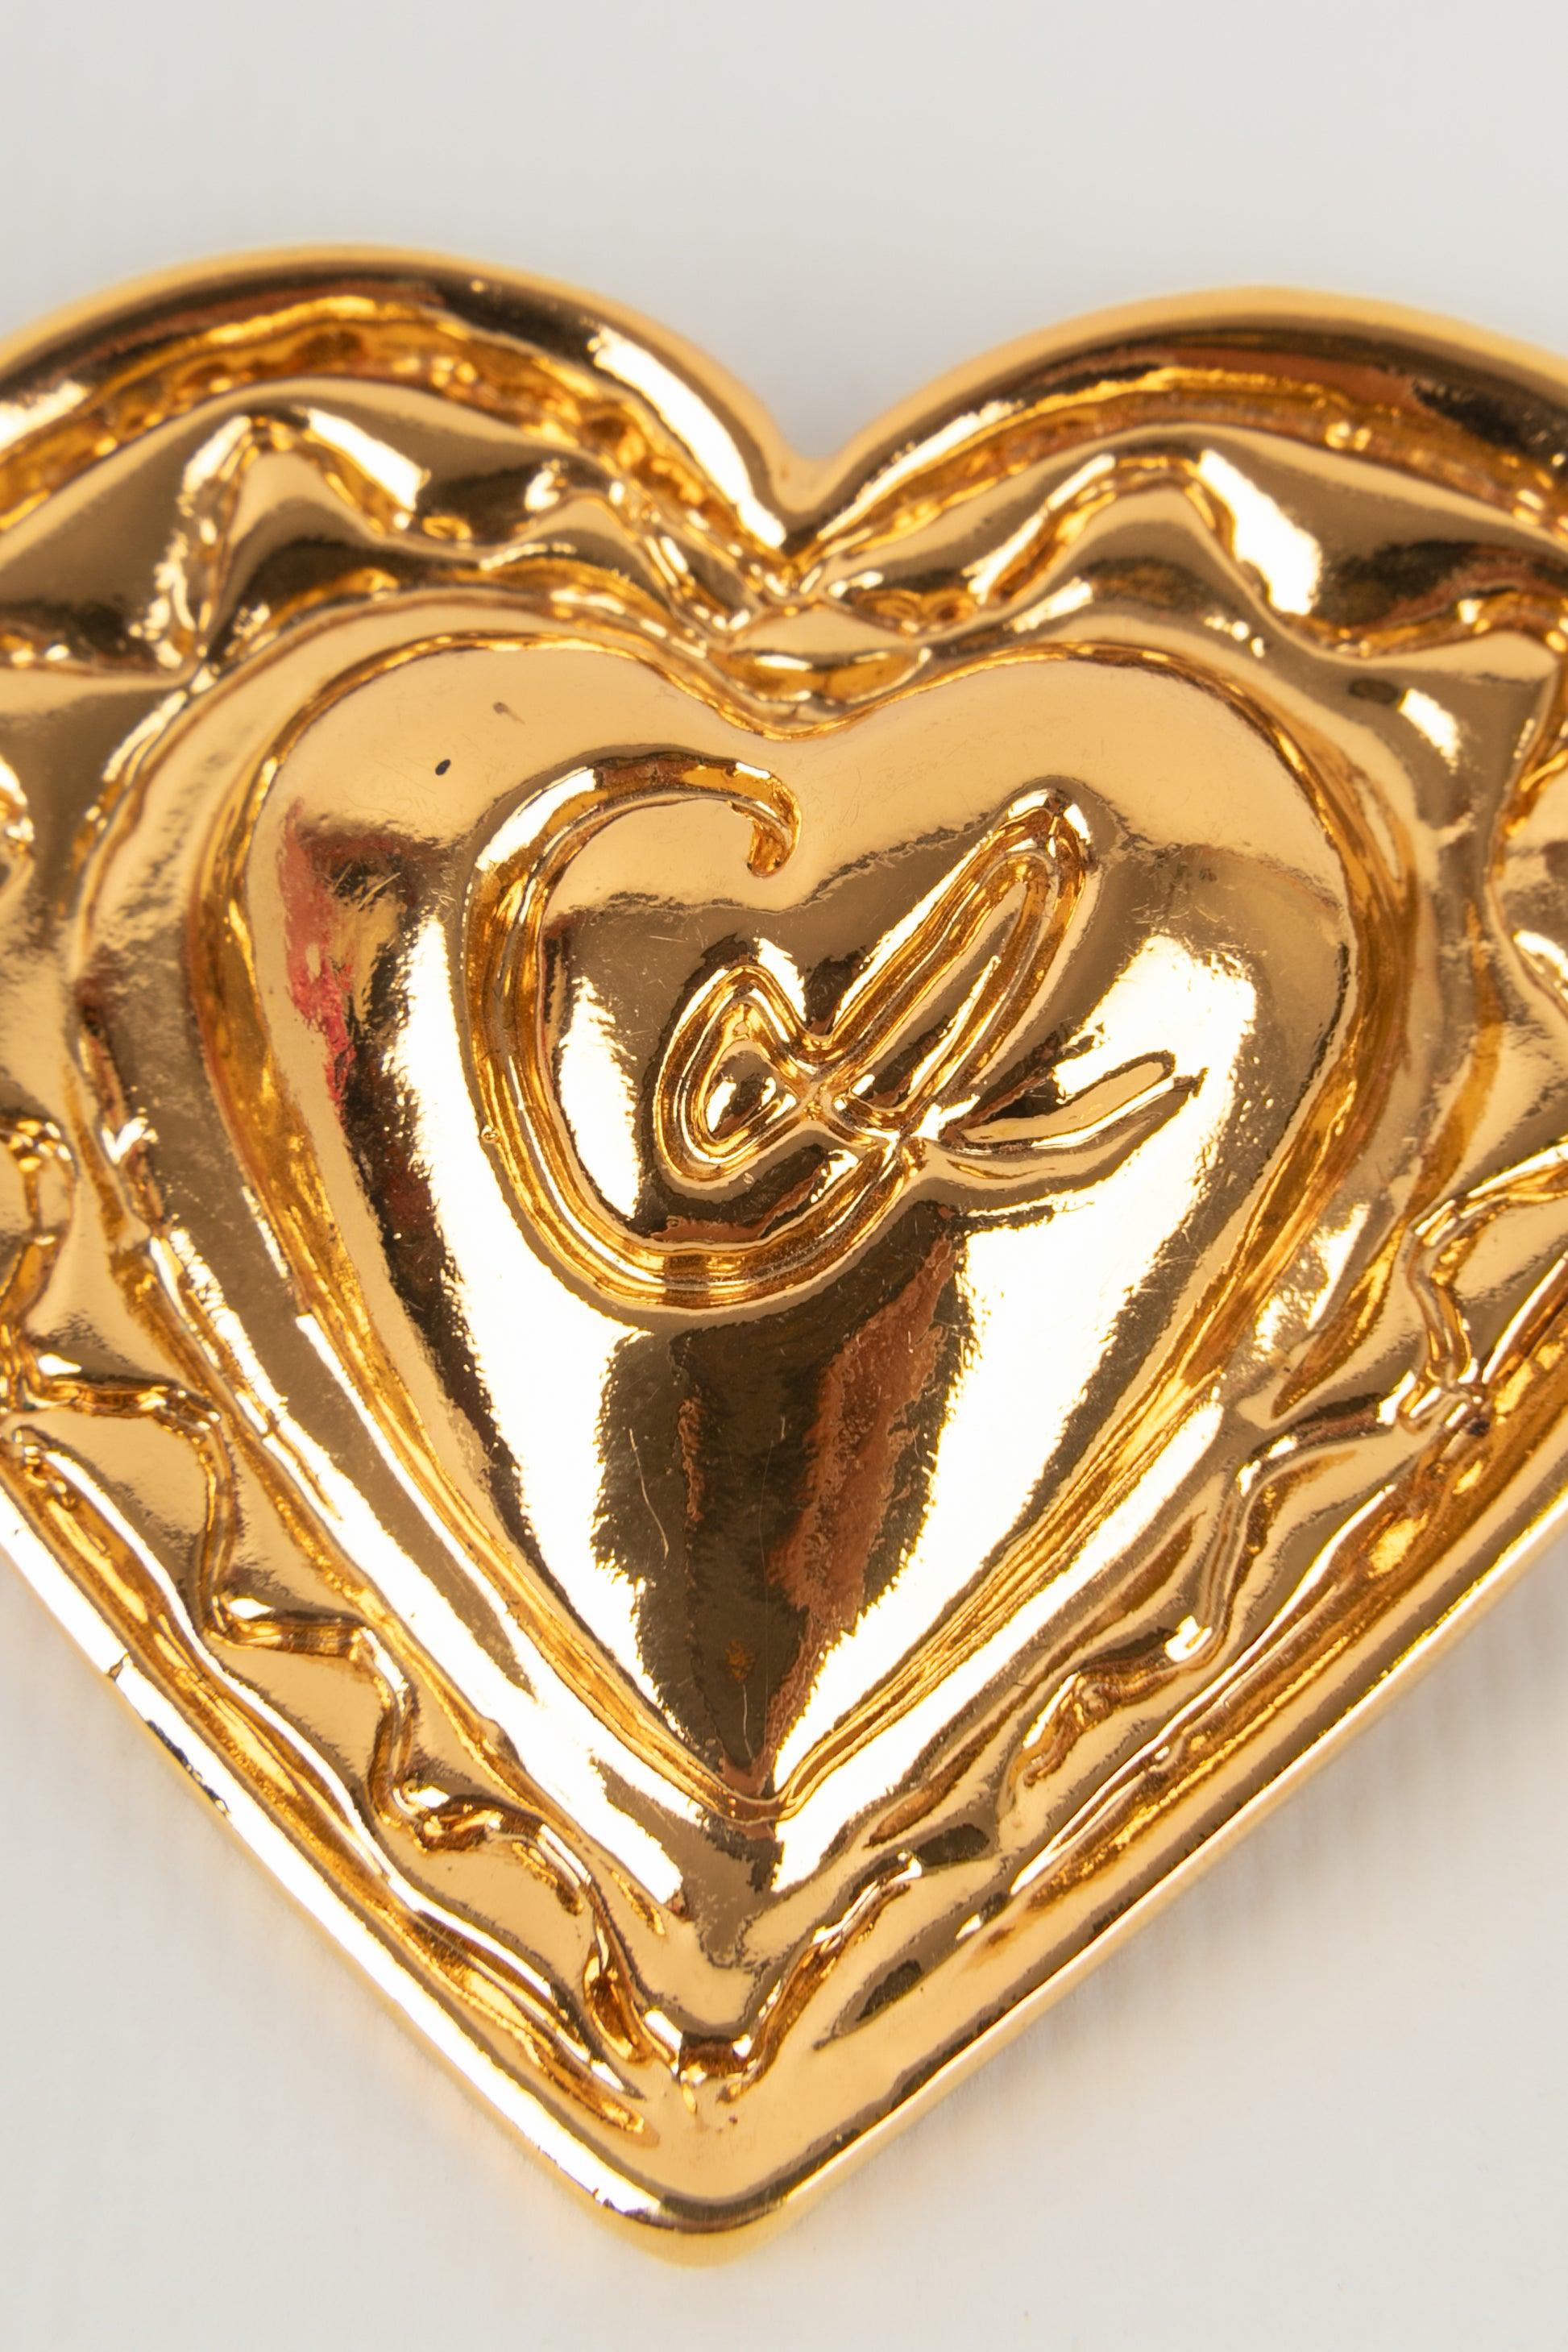 Christian Lacroix - (Fabriqué en France) Broche en métal doré représentant un cœur. Bijoux datant du milieu des années 1990.

Informations complémentaires :
Condit : Très bon état.
Dimensions : 6 cm x 6 cm : 6 cm x 6 cm
Période : 20ème